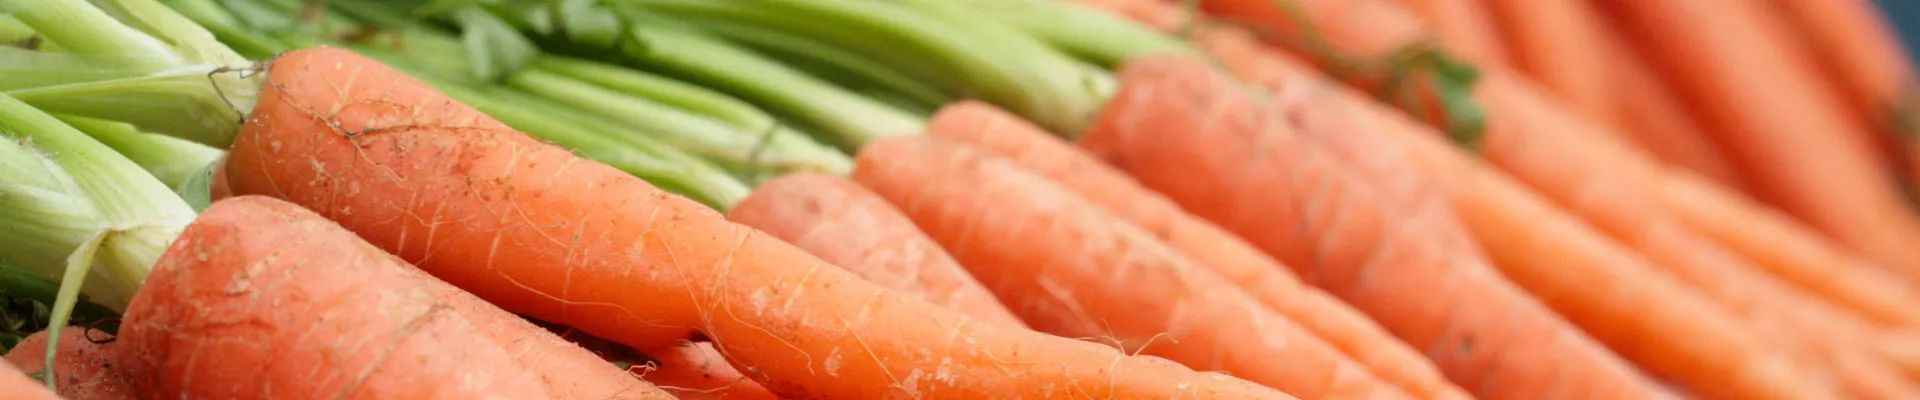 Cultívalo tú mismo: Zanahorias